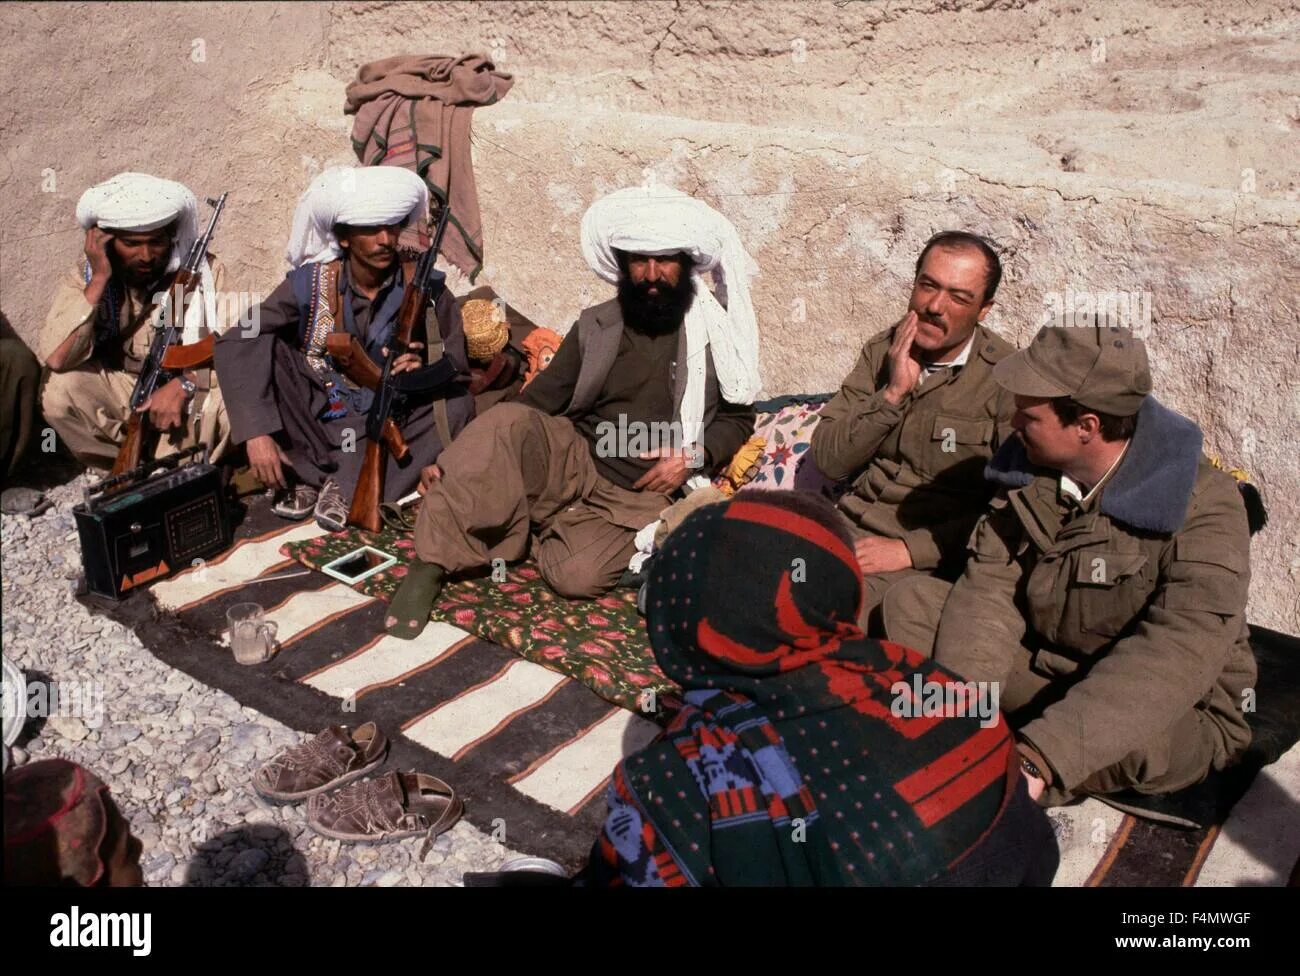 Моджахеды в Афганистане 1979. Талибы Афганистан 1979. Афганские моджахеды 1989. Белуджи в Афганистане. Операция в афганистане название